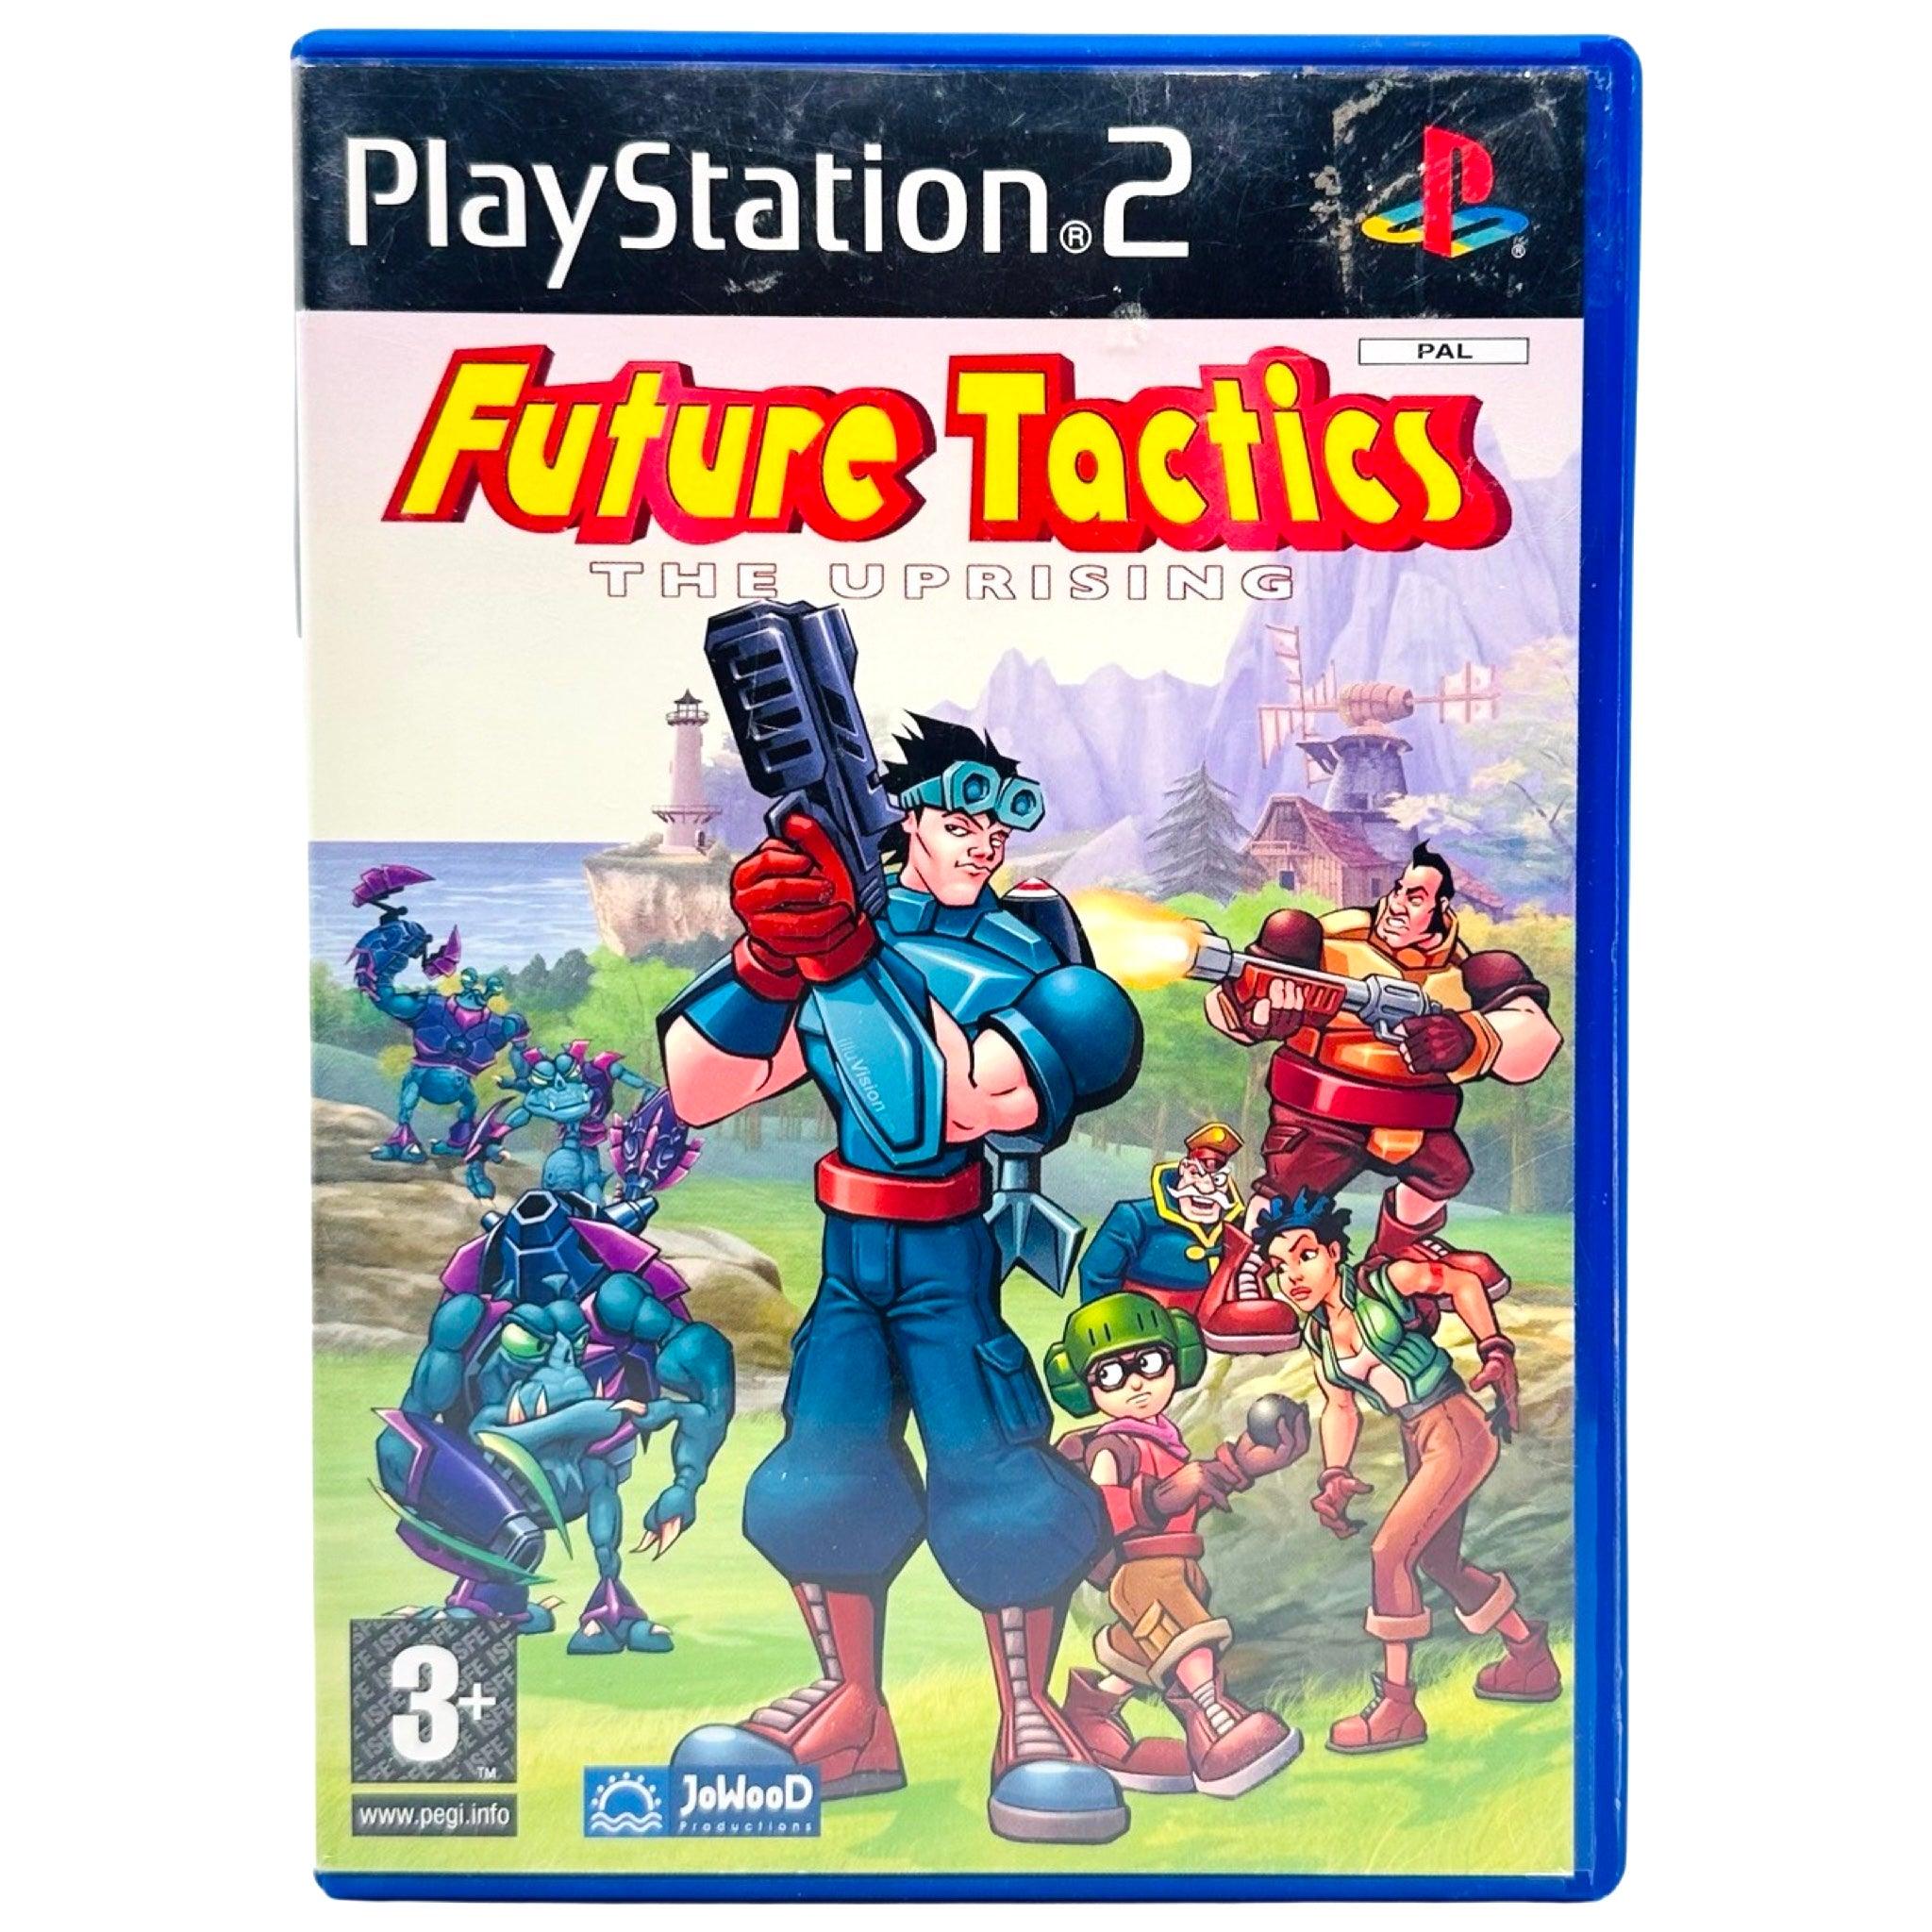 PS2: Future Tactics - RetroGaming.no